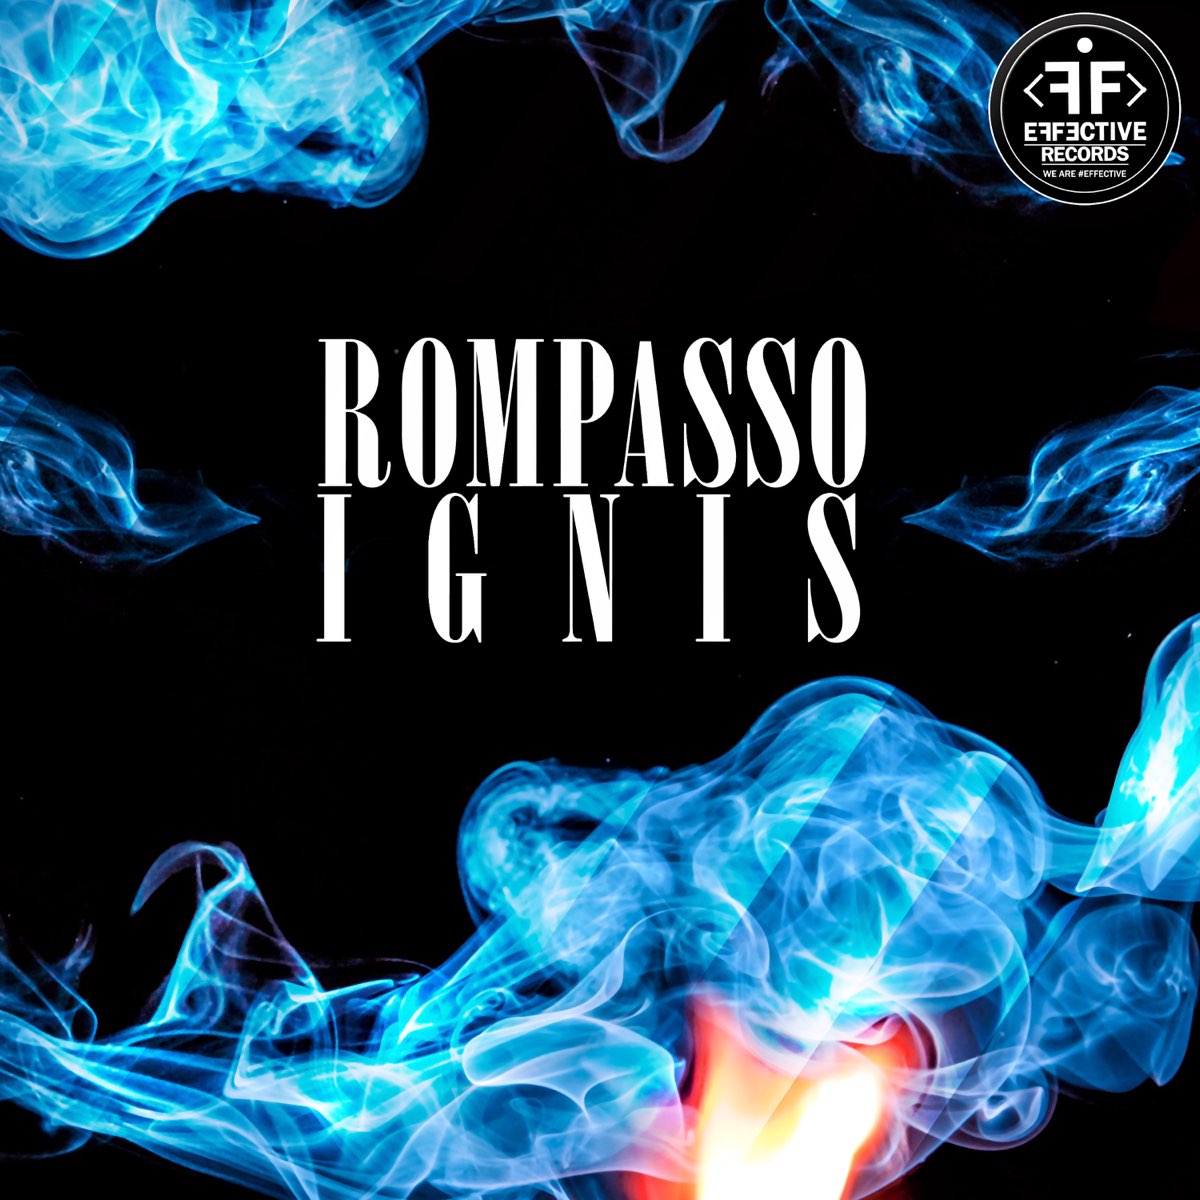 Rompasso — Ignis cover artwork